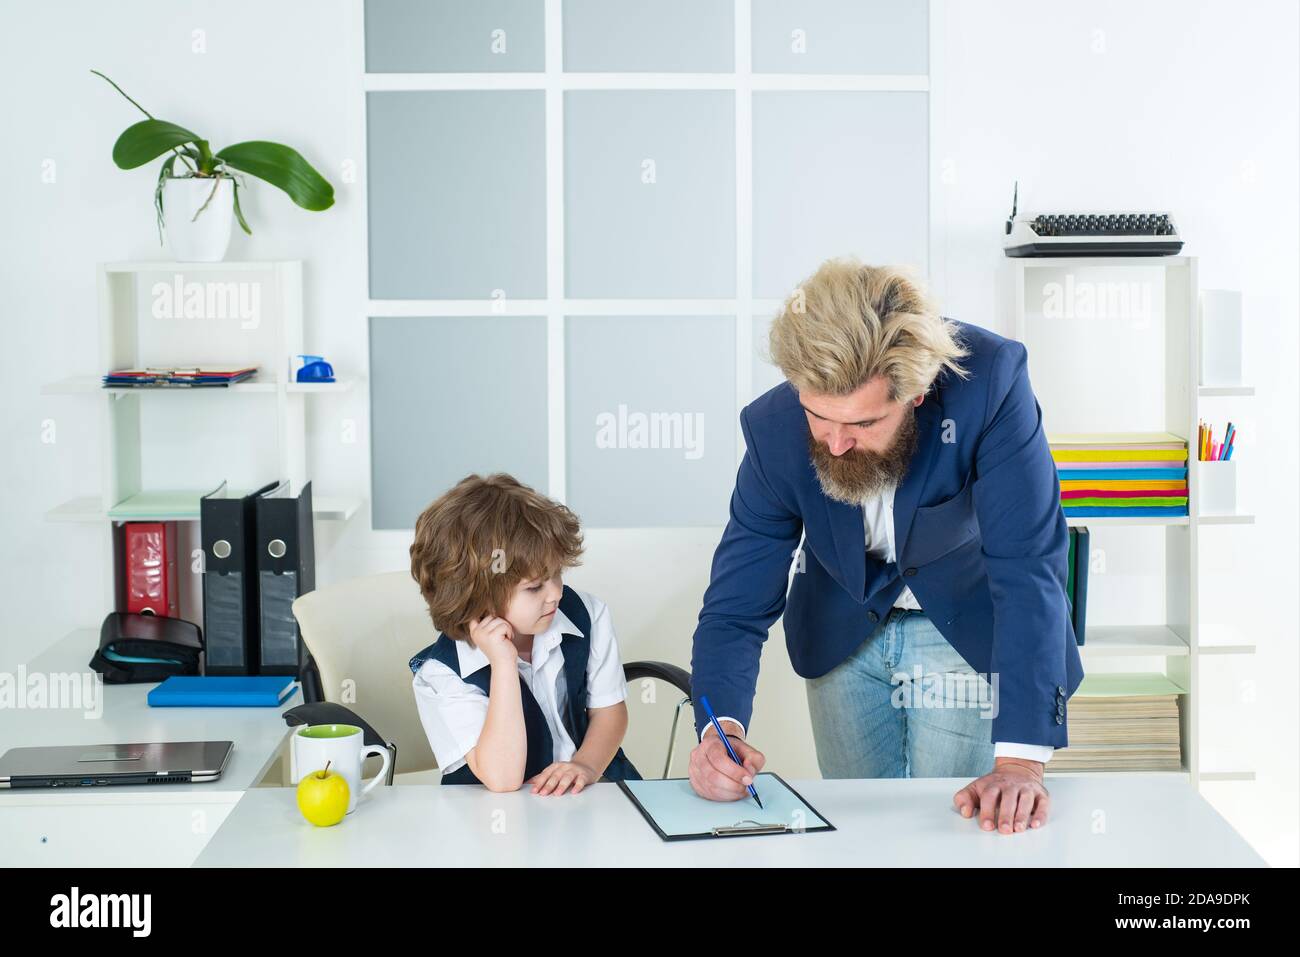 Kleines Kind, das auf einem Schreibtisch im Büro als Chef spielt. Marketing-Team Meeting Brainstorming Forschung. Stockfoto